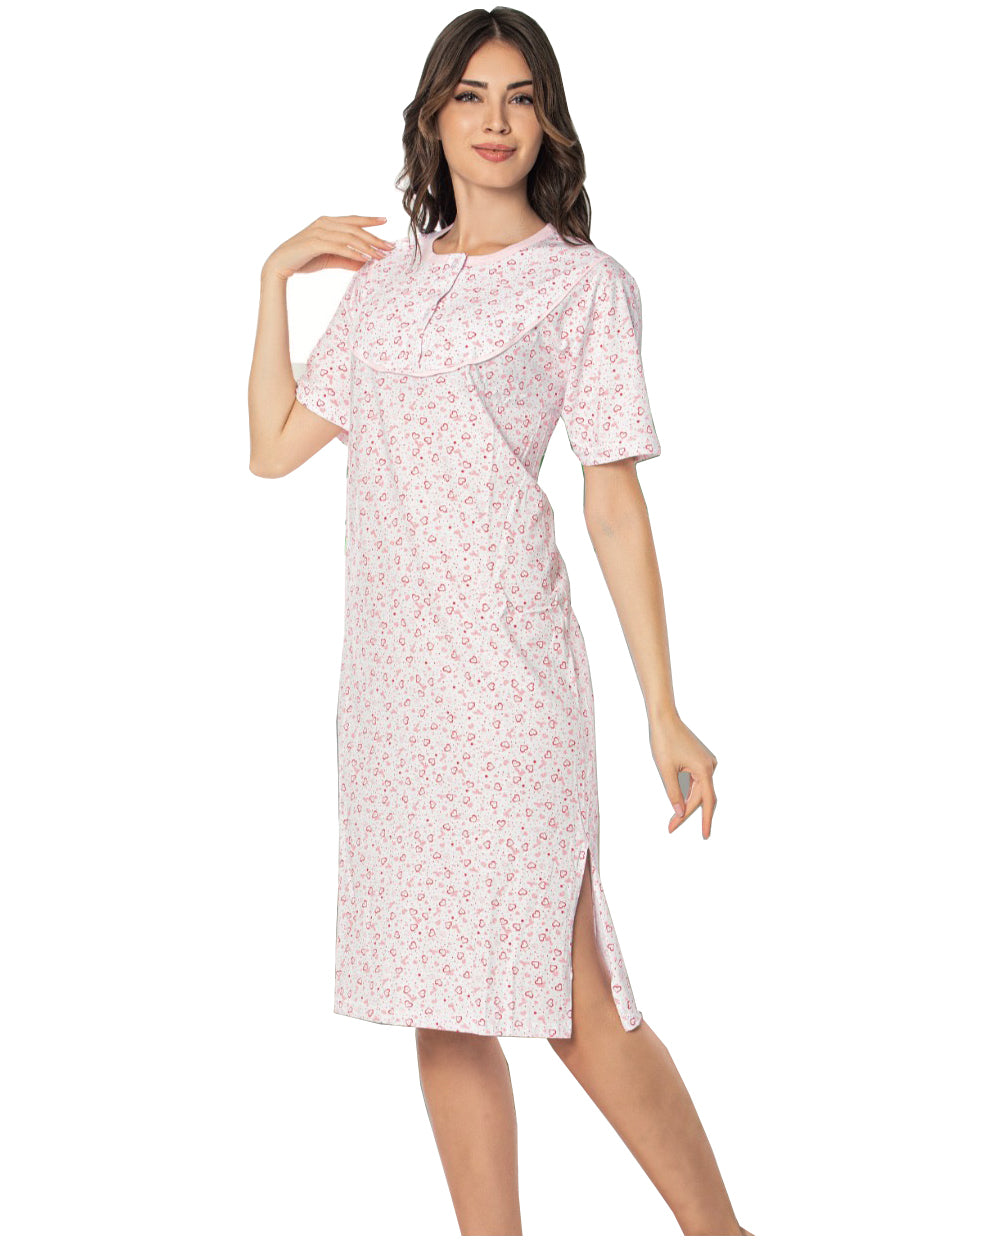 100% cotton Ladies Chemise Night Shirt Women Nightdress Nighties Suit NS-20-2